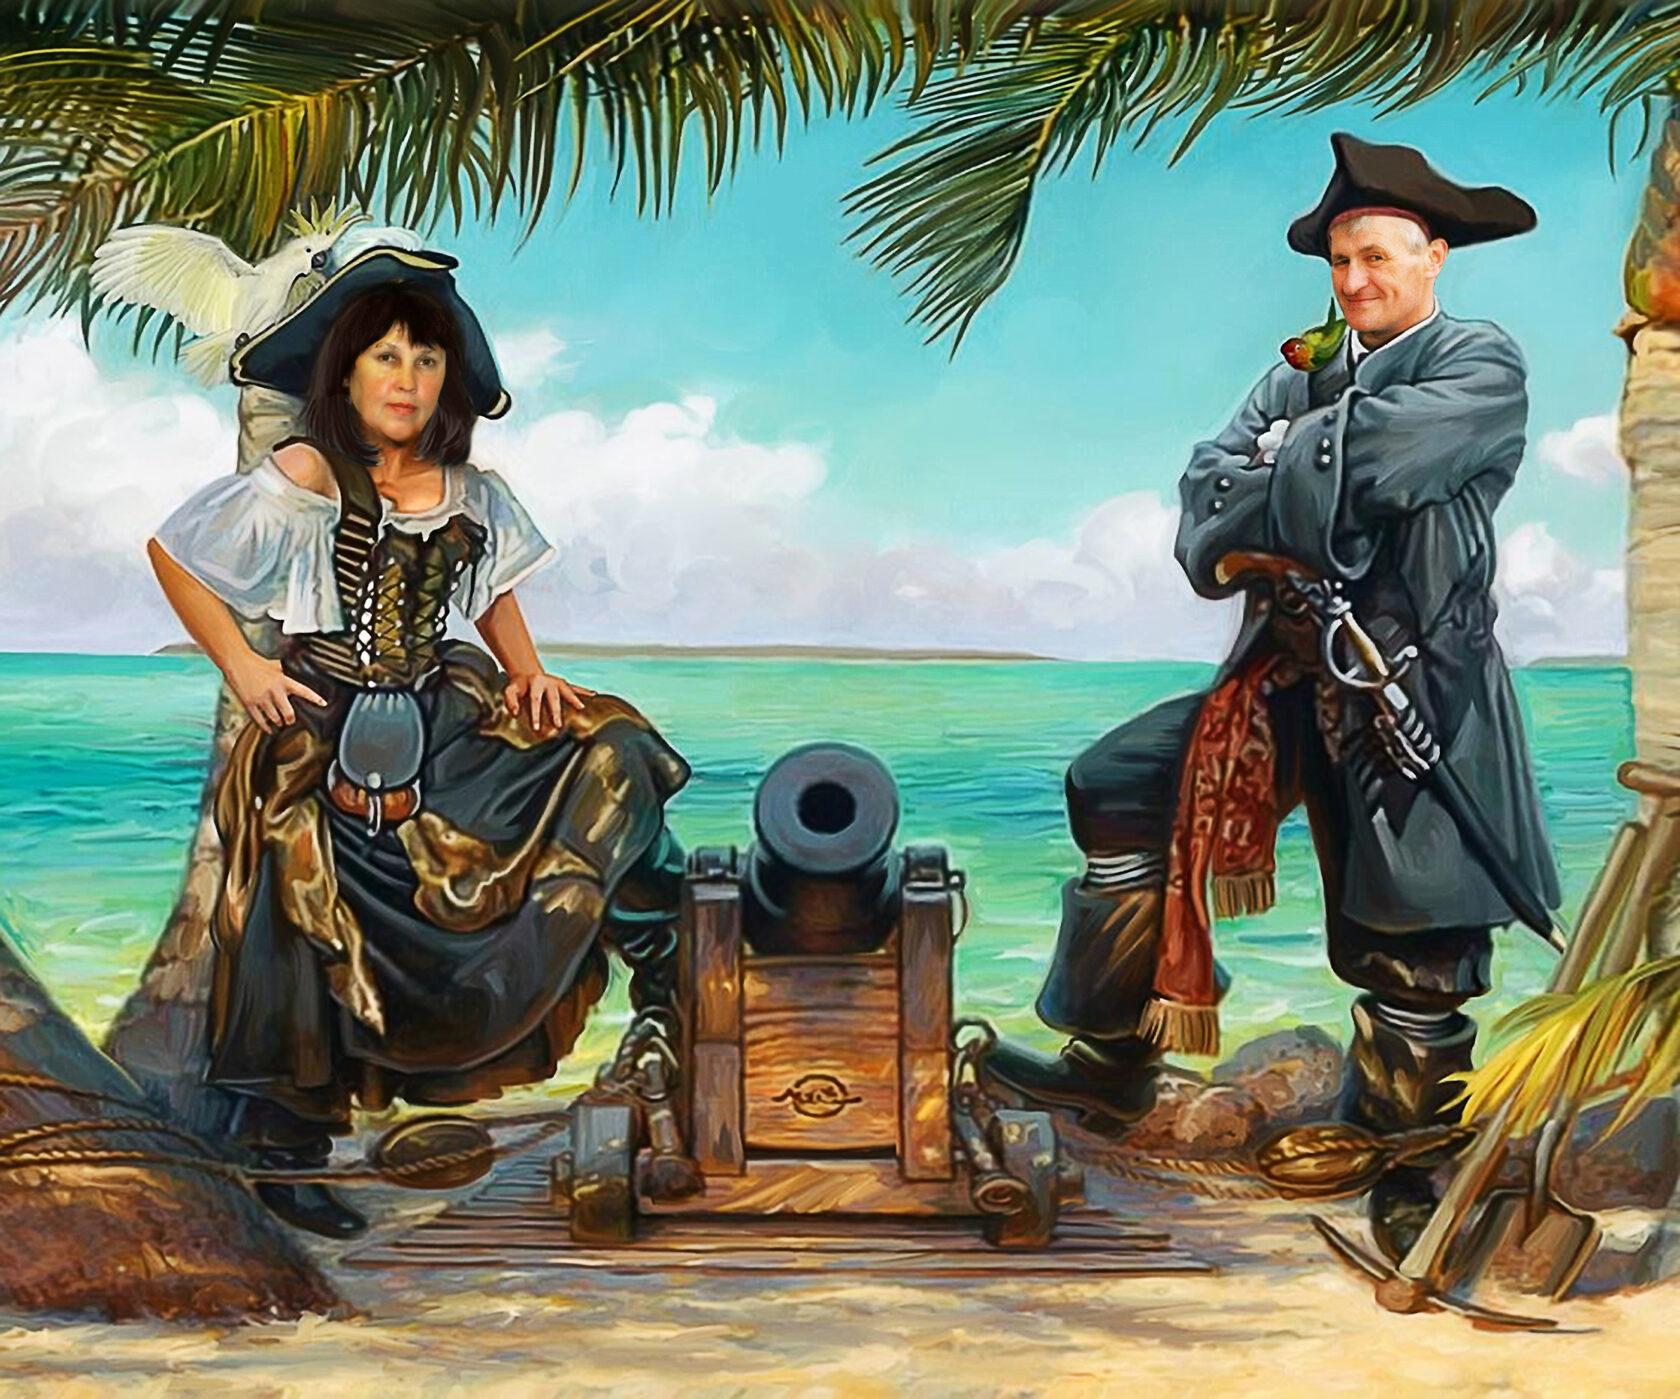 Остров пиратов. Картины don Maitz пираты. Художник Саша Беляев пираты. Пираты Карибского моря остров сокровищ. Карибское море пираты исторические.